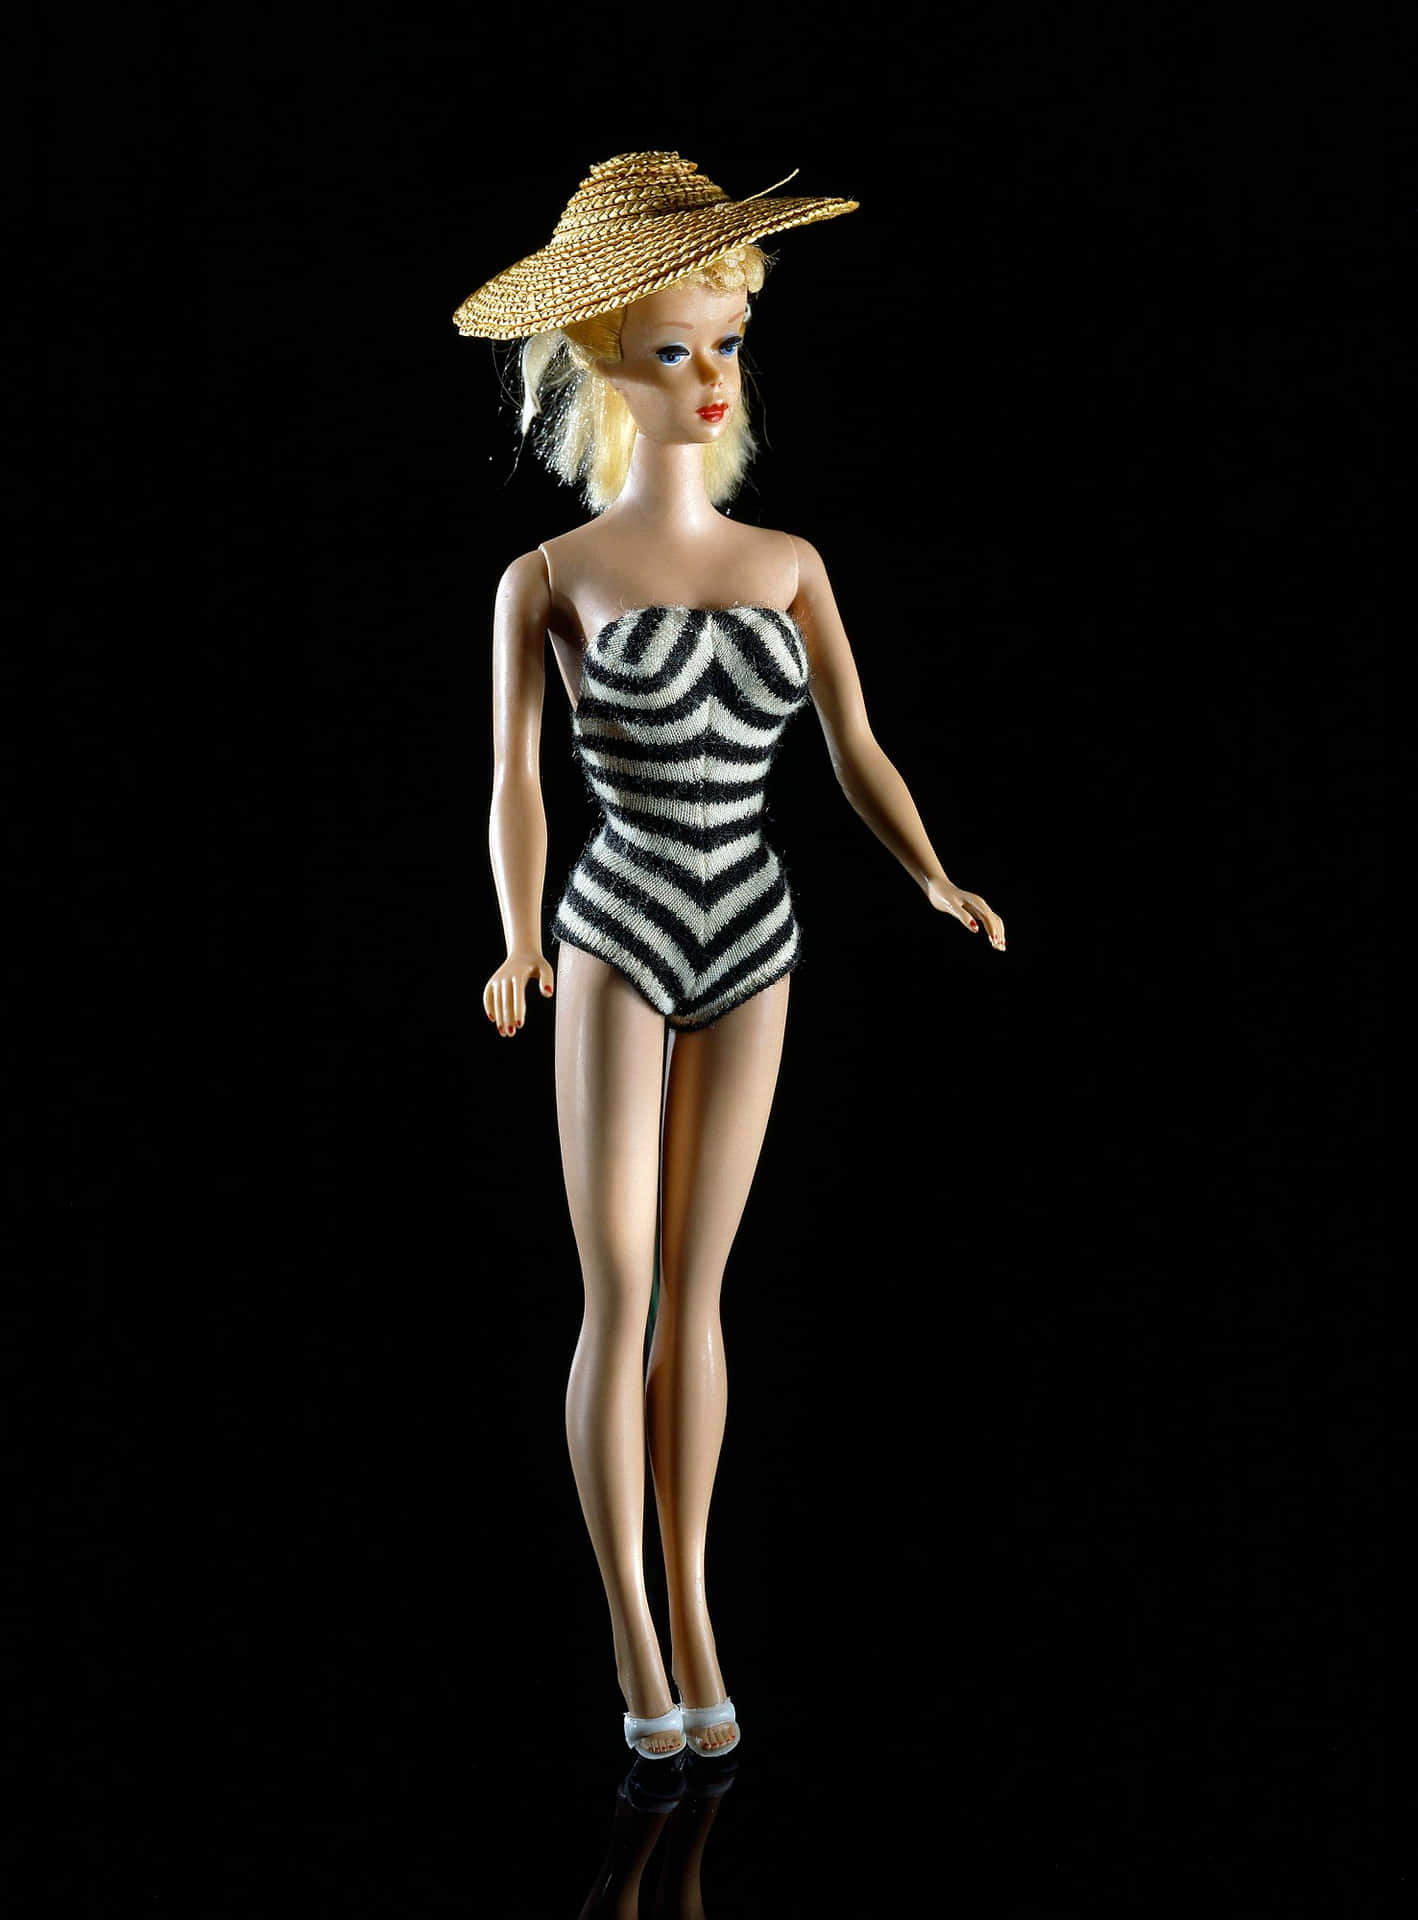 Façaum Desejo Com Bonecas Barbie.